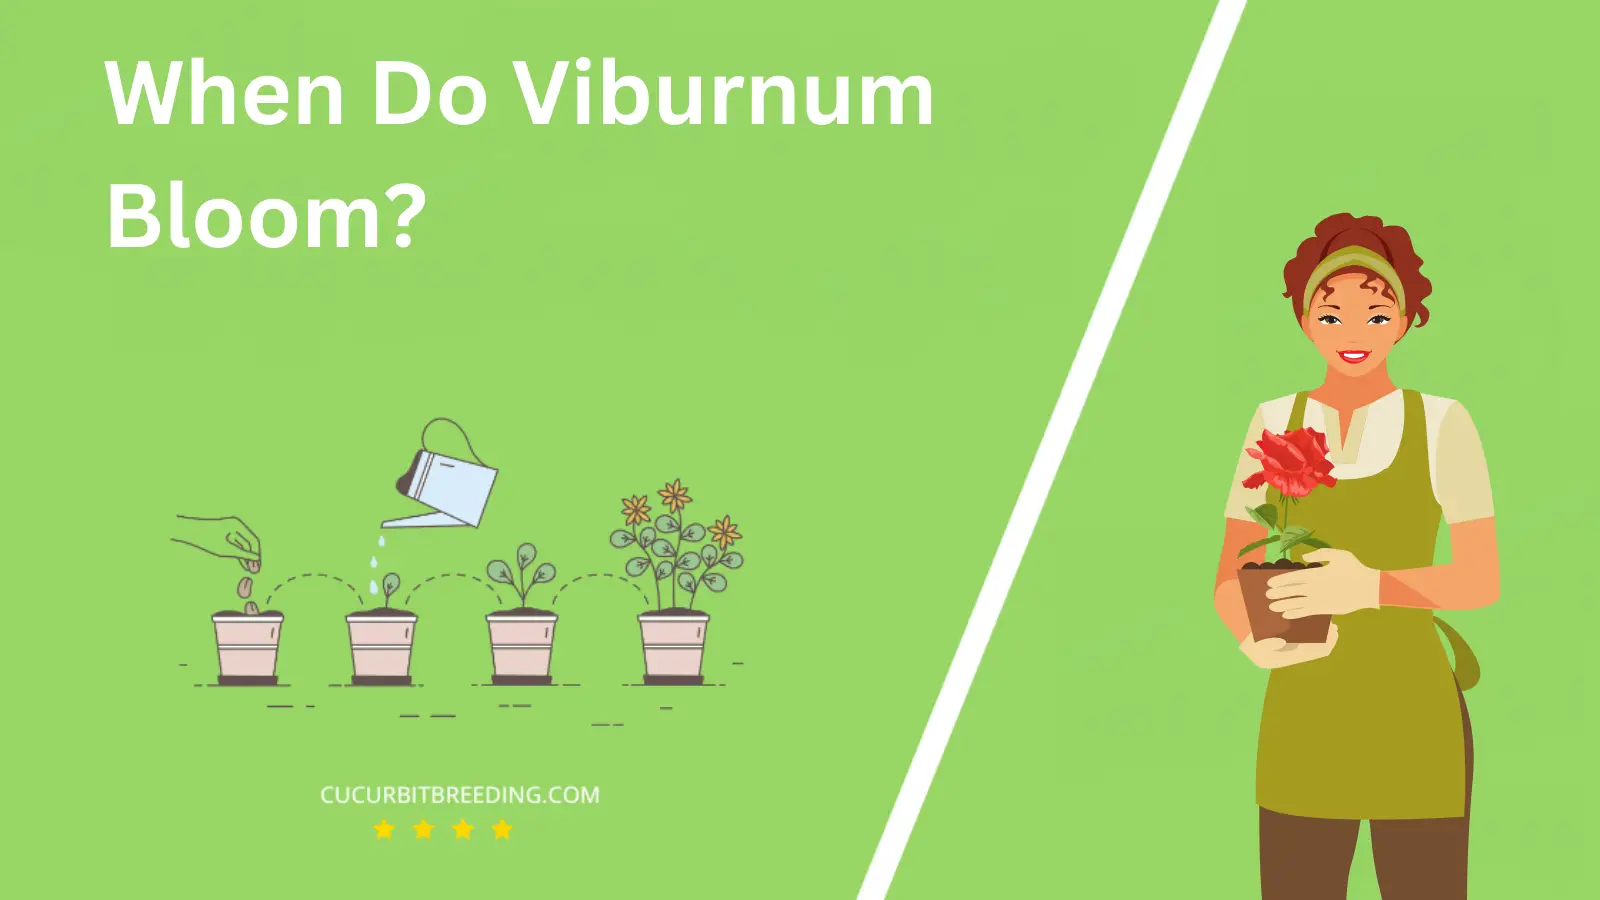 When Do Viburnum Bloom?